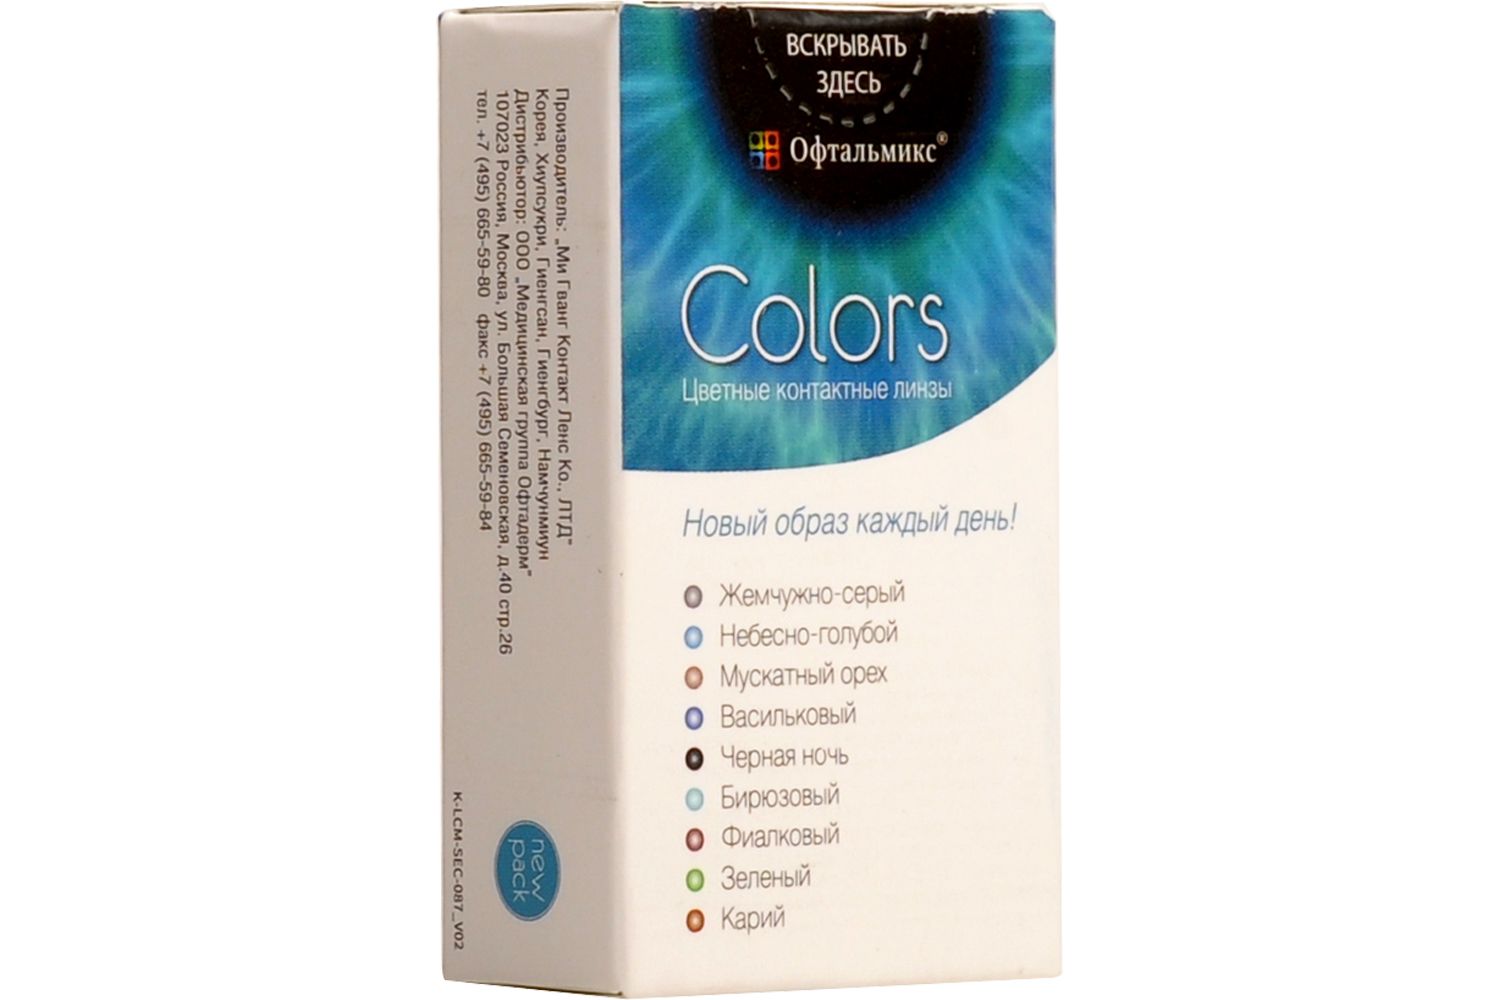 Купить Colors 2 линзы, Цветные контактные линзы Офтальмикс Colors, 2 шт. PWR -0, 50, R 8.6, Cloud